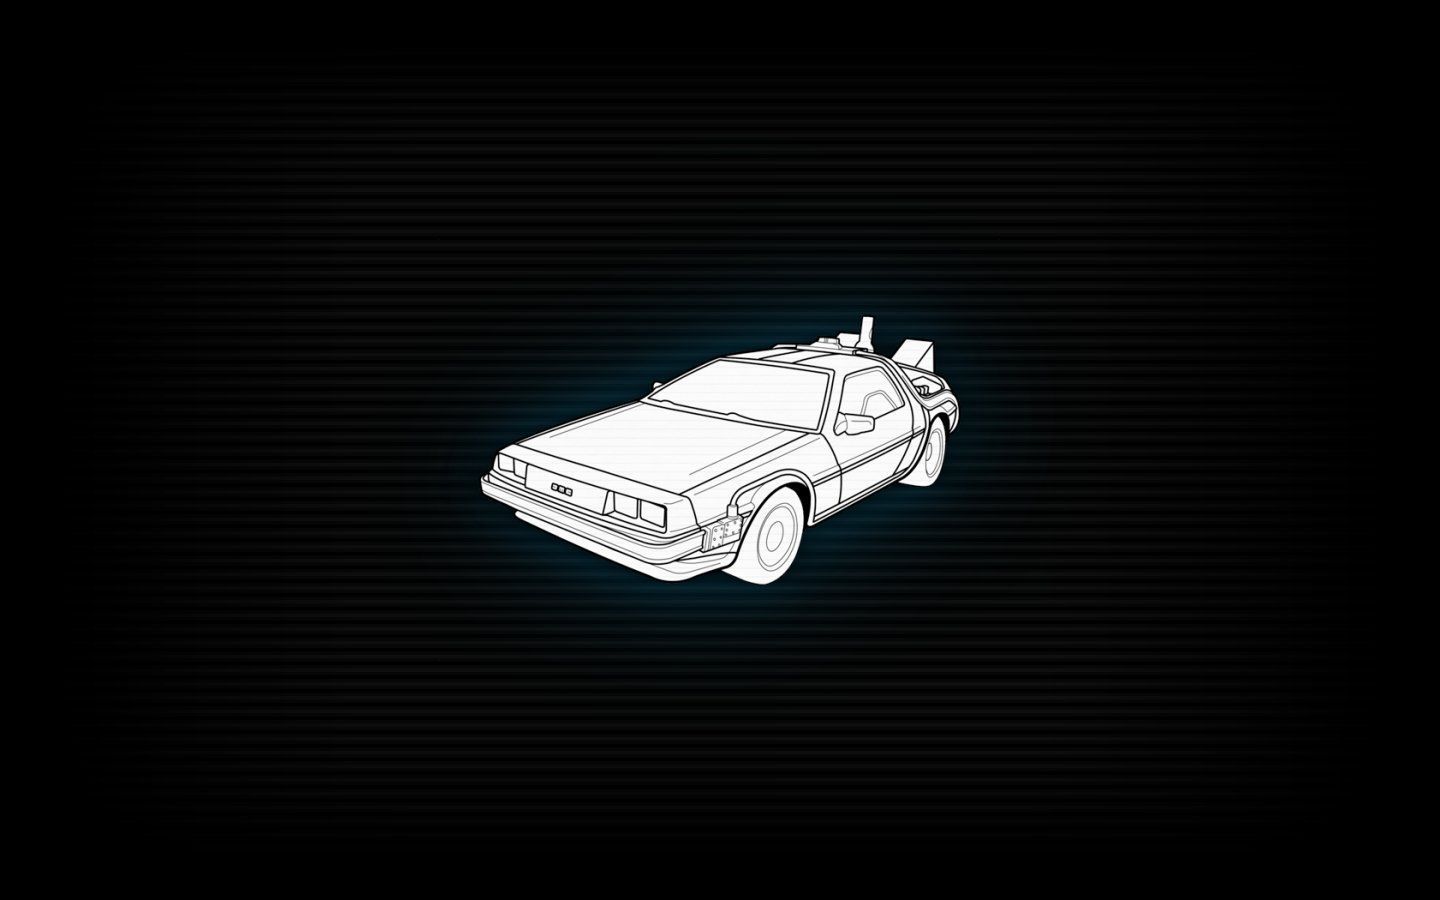 Back to the Future DeLorean DMC-12 wallpaper | 1440x900 | 259045 ...